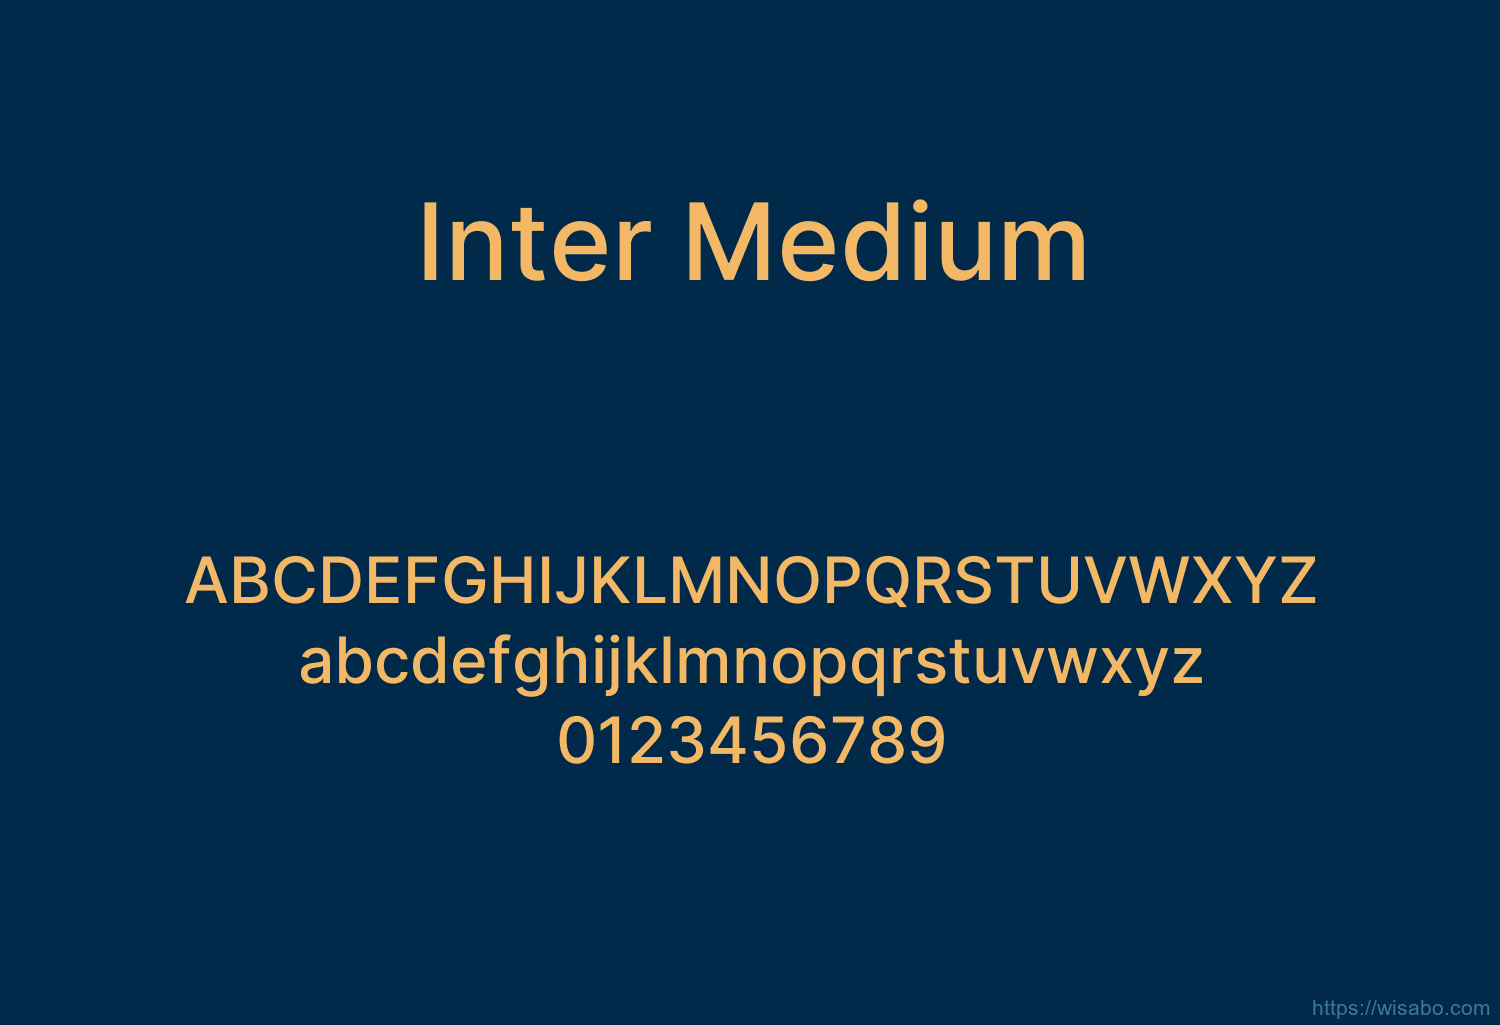 Inter Medium